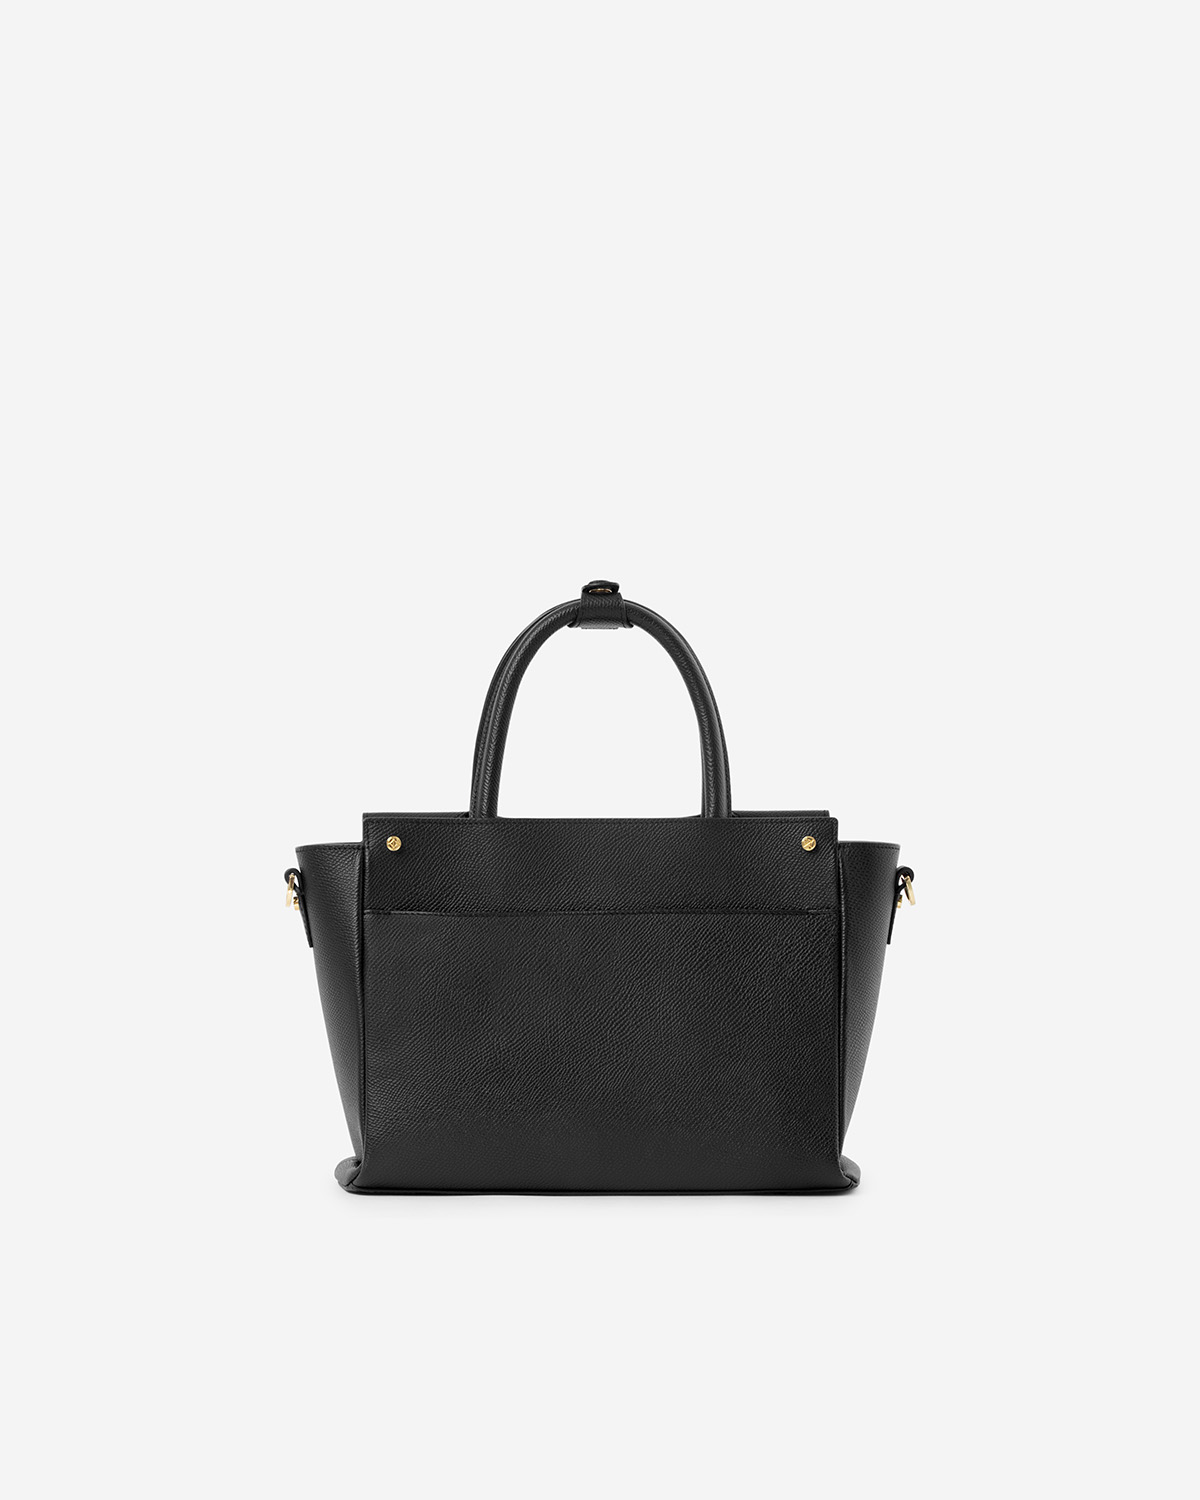 กระเป๋าถือหนังแท้ VERA Heidi Leather Handbag, ไซส์ 28 สี Black